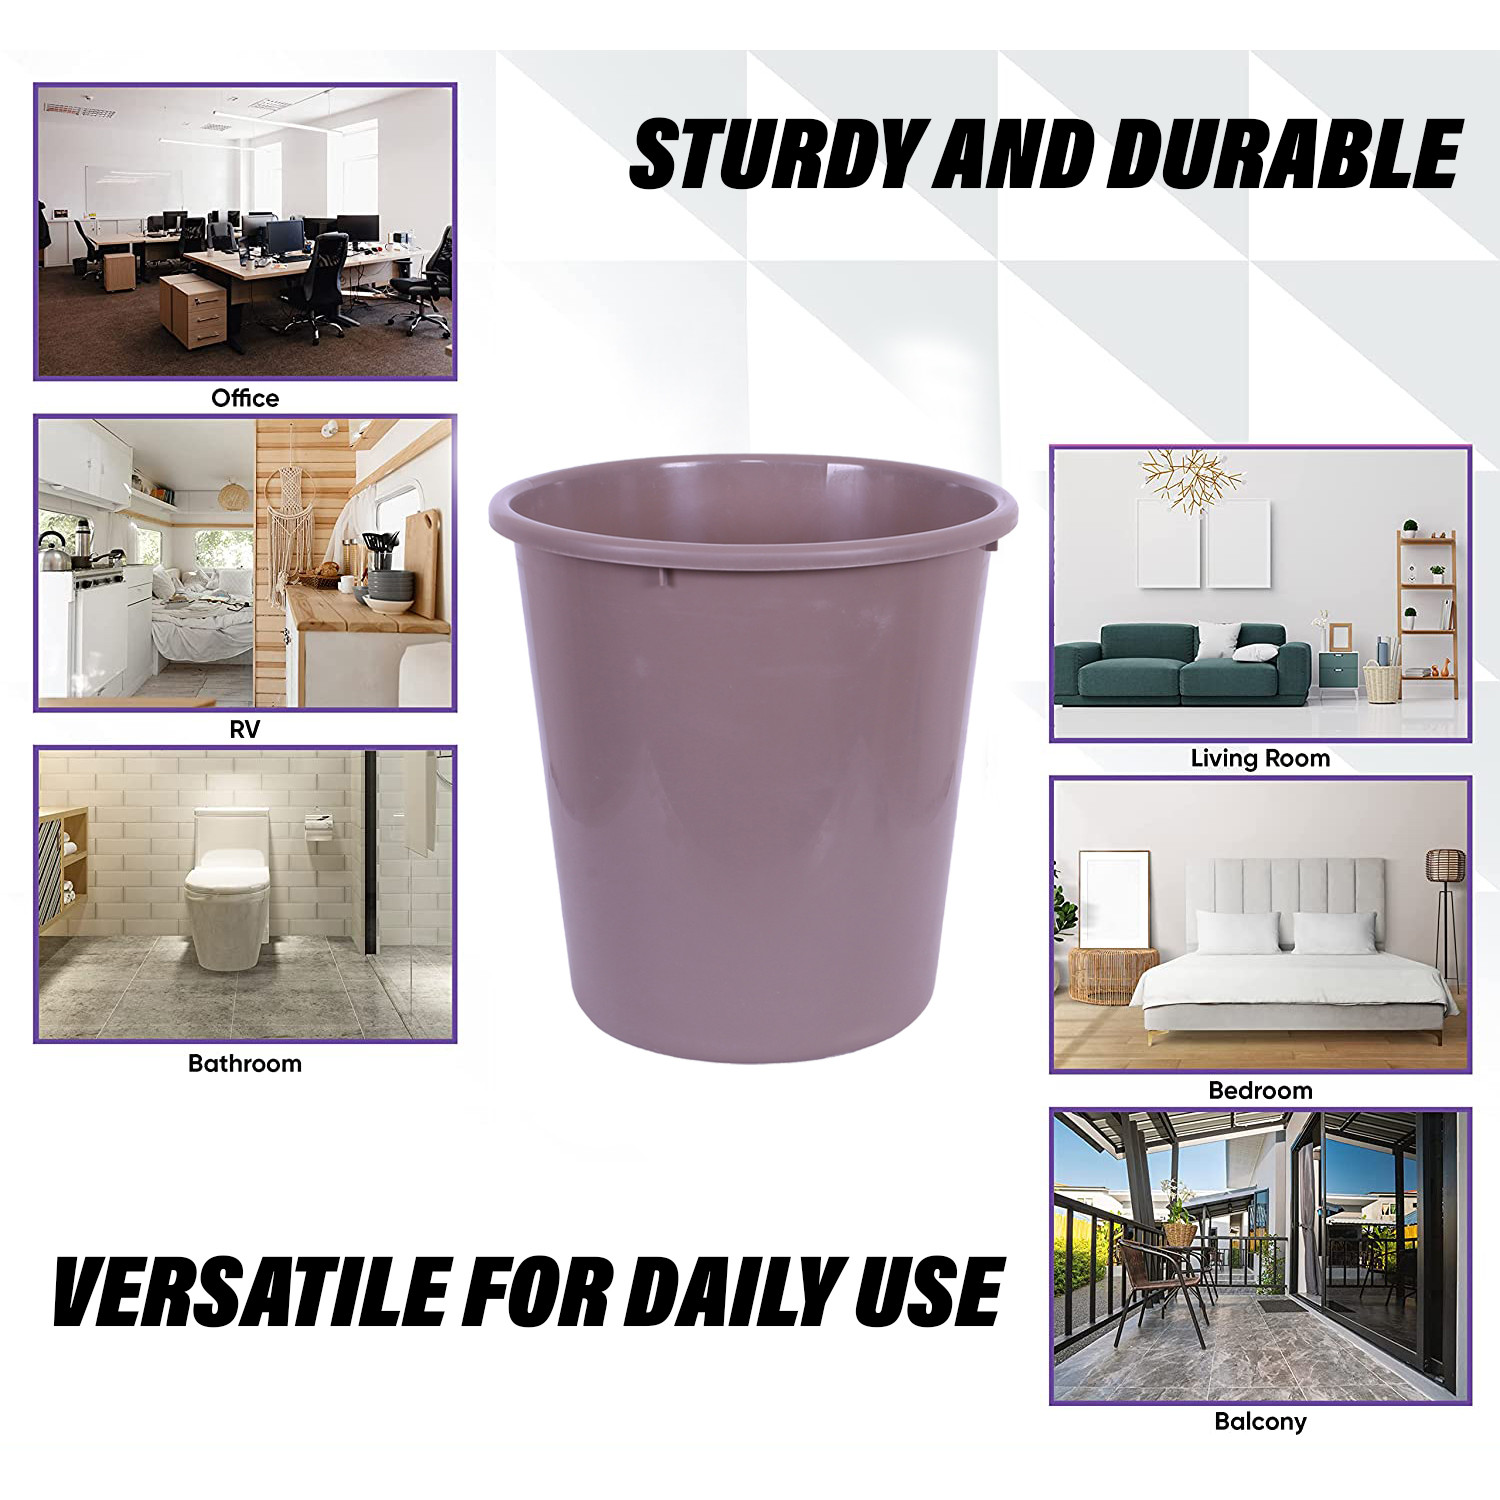 Kuber Industries Dustbin | Open Dustbin | Plastic Garbage Dustbin | Dustbin For Kitchen | Dustbin For Bathroom | Office Dustbin | Plain Sada Dustbin | 7 LTR | 066 | Brown